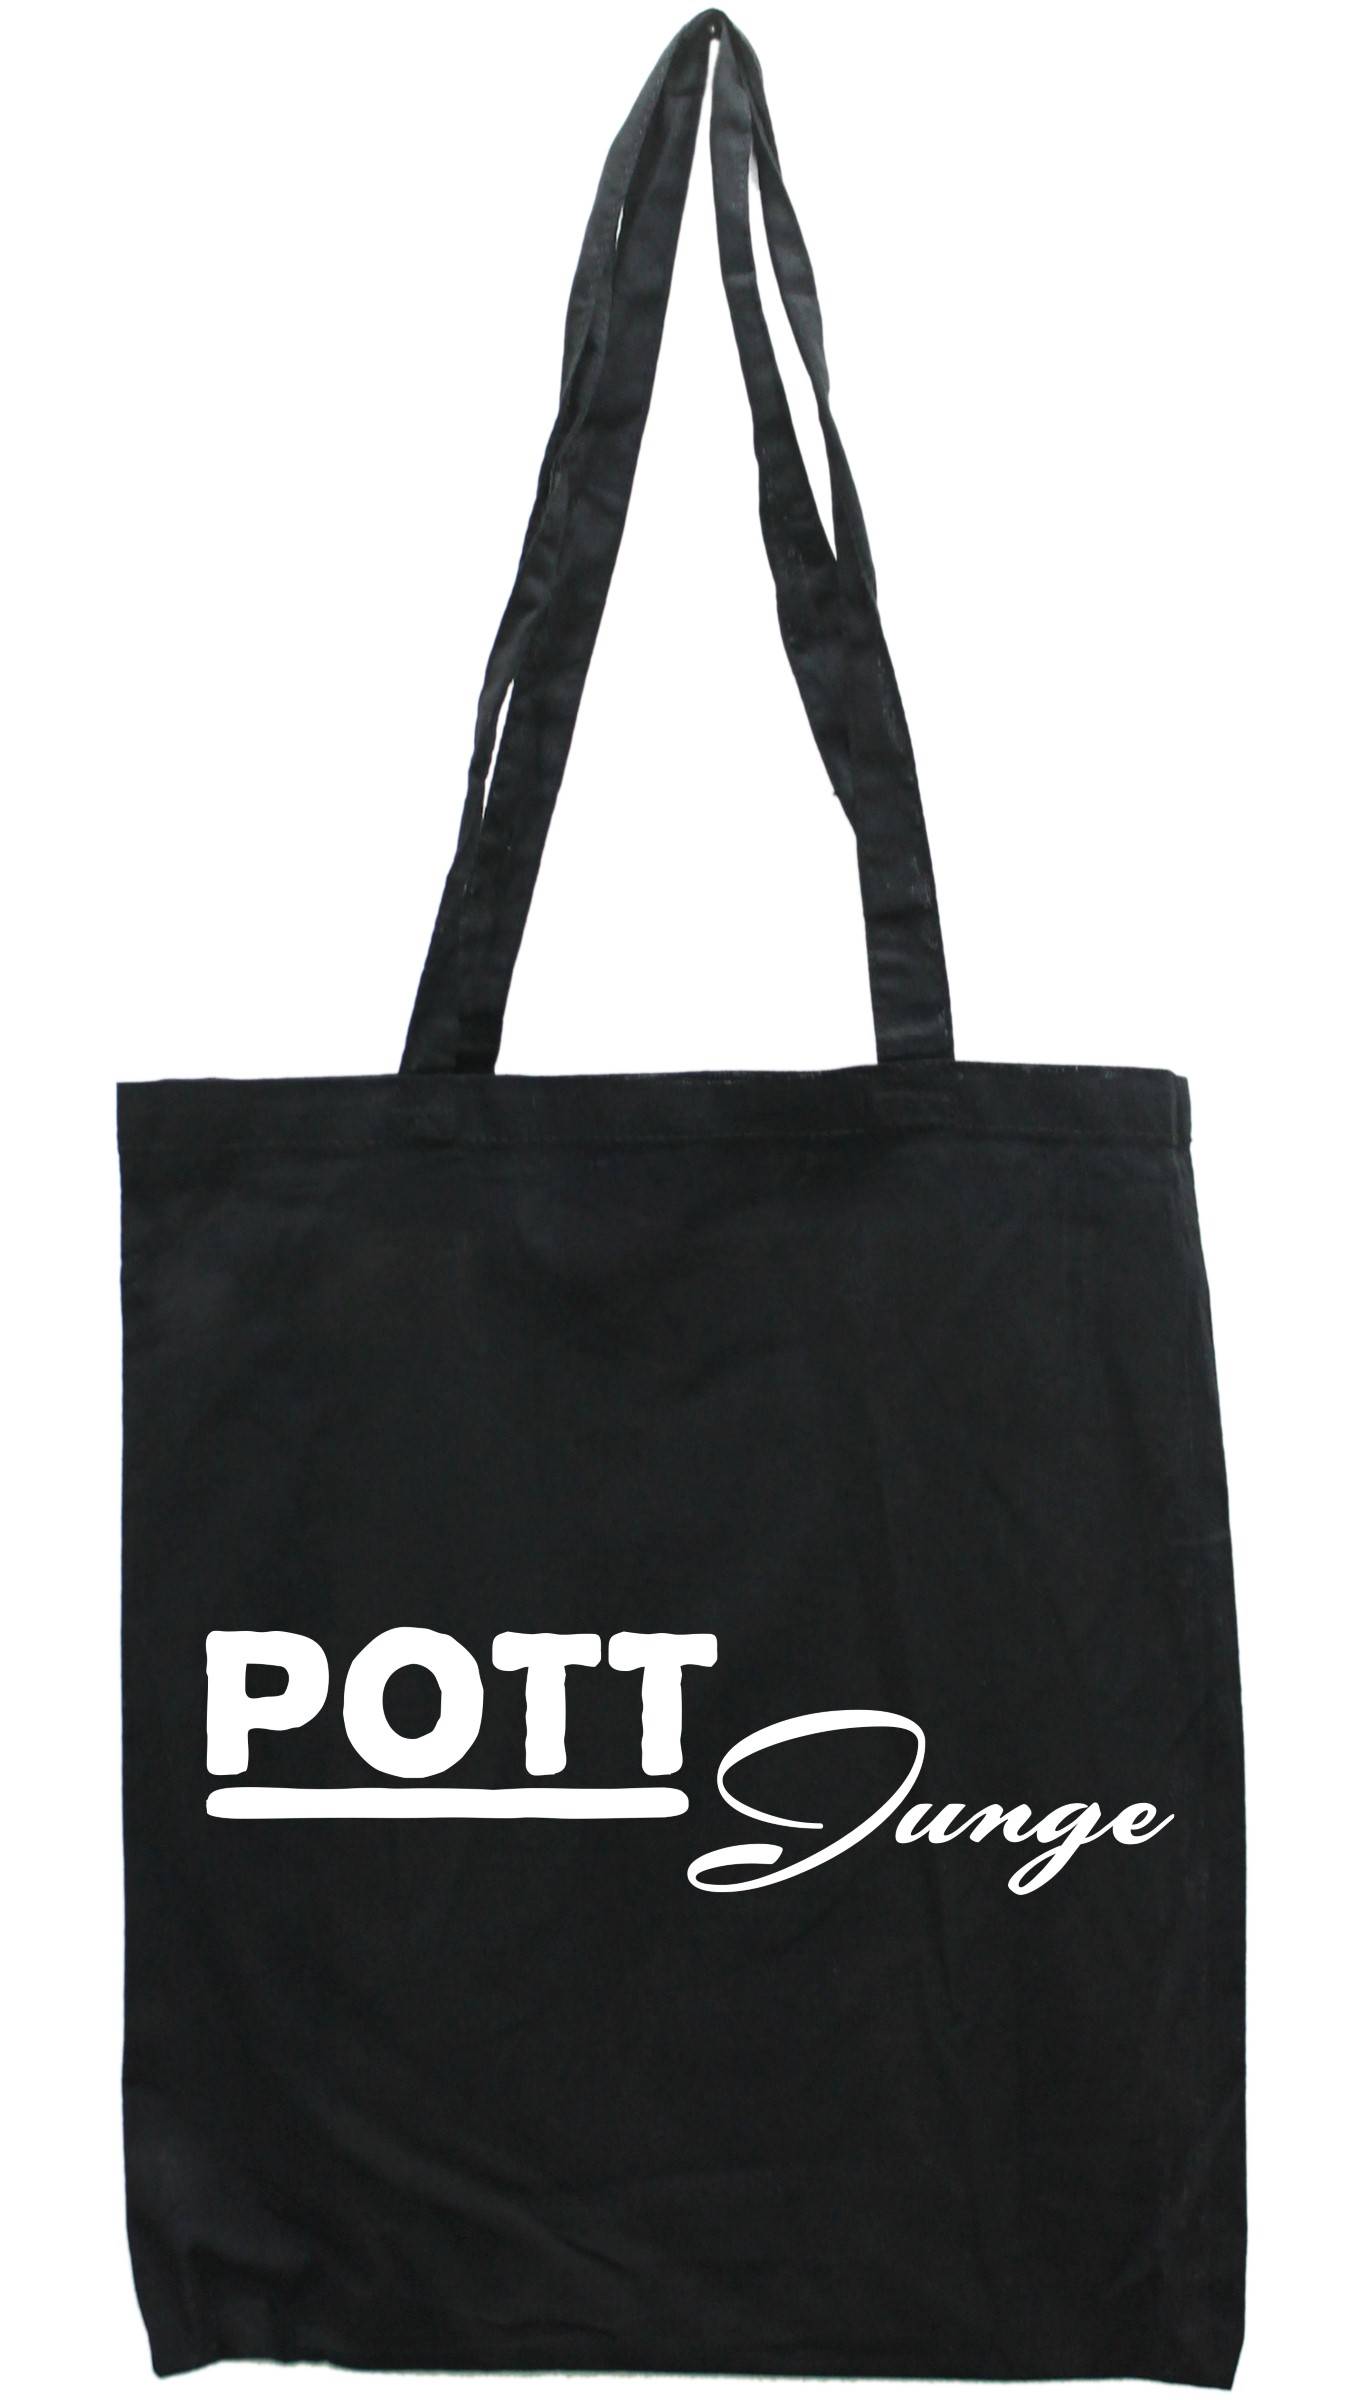 Pott-Junge, - Druckfarbe schwarz | ikondo.de auswählbar, Tasche Einkaufs-Beutel & Wohnaccessoires Geschenkartikel